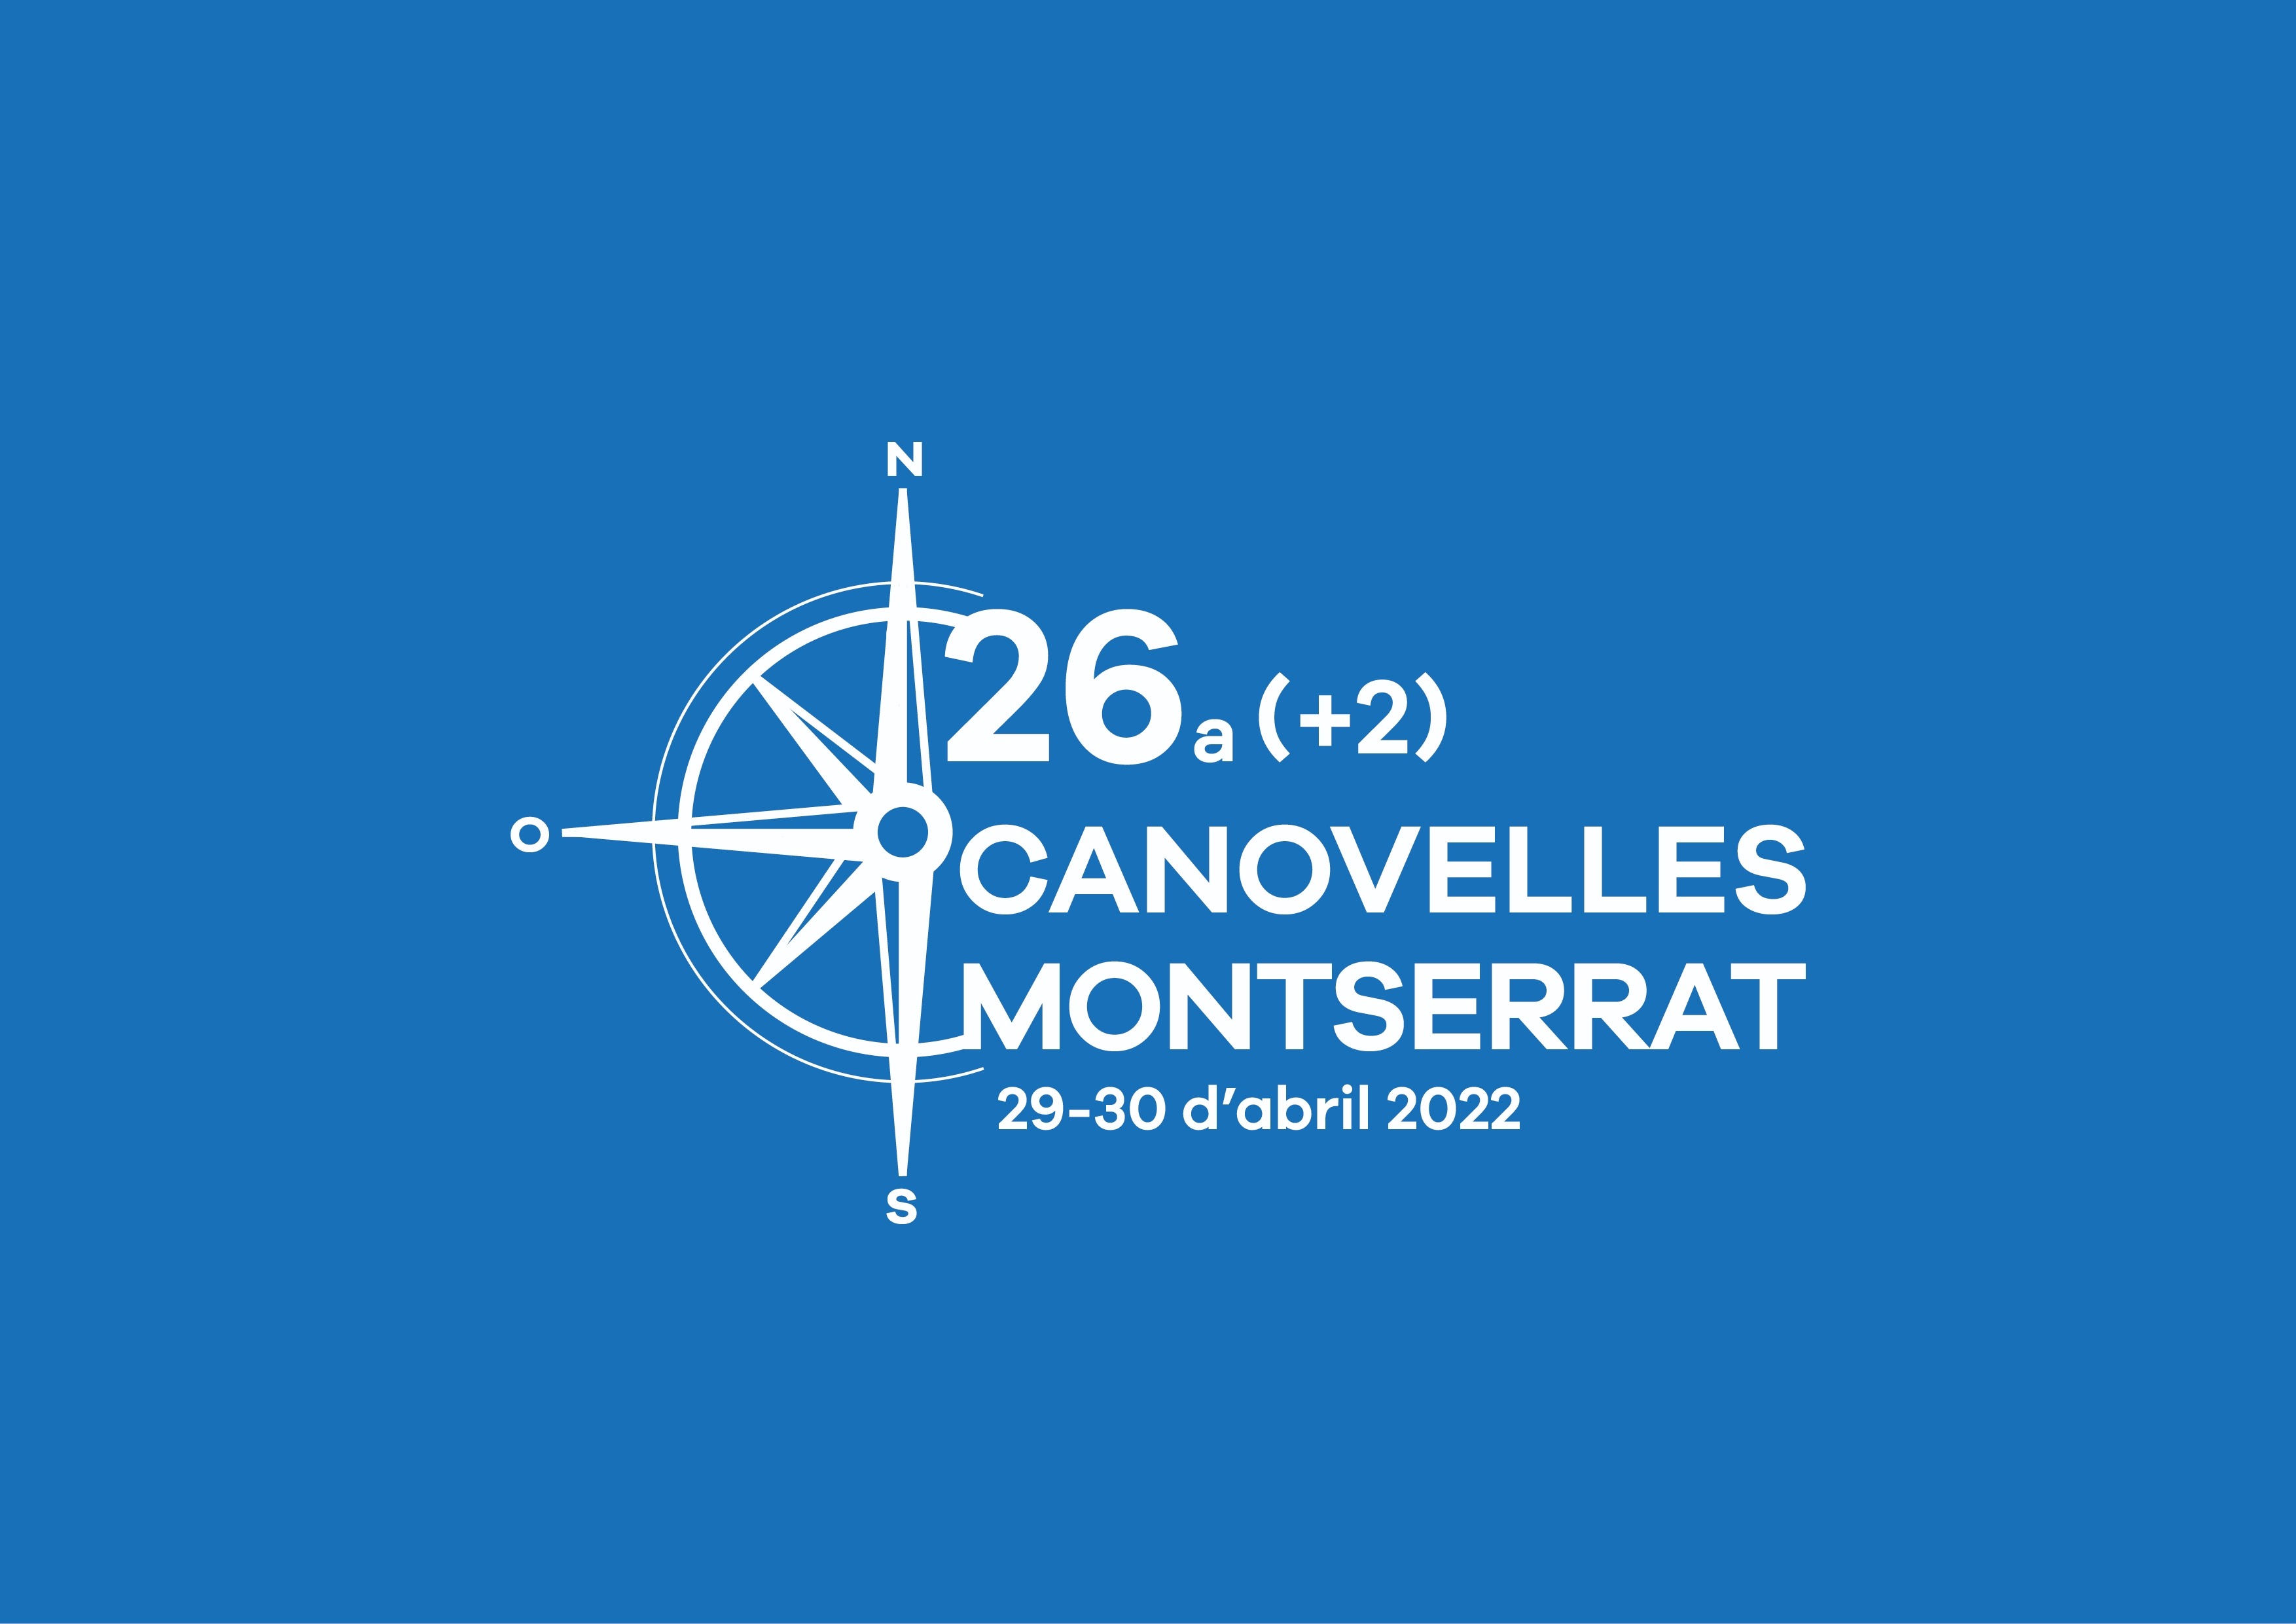 26A (+2) MARXA CANOVELLES - MONTSERRAT - Inscriu-te